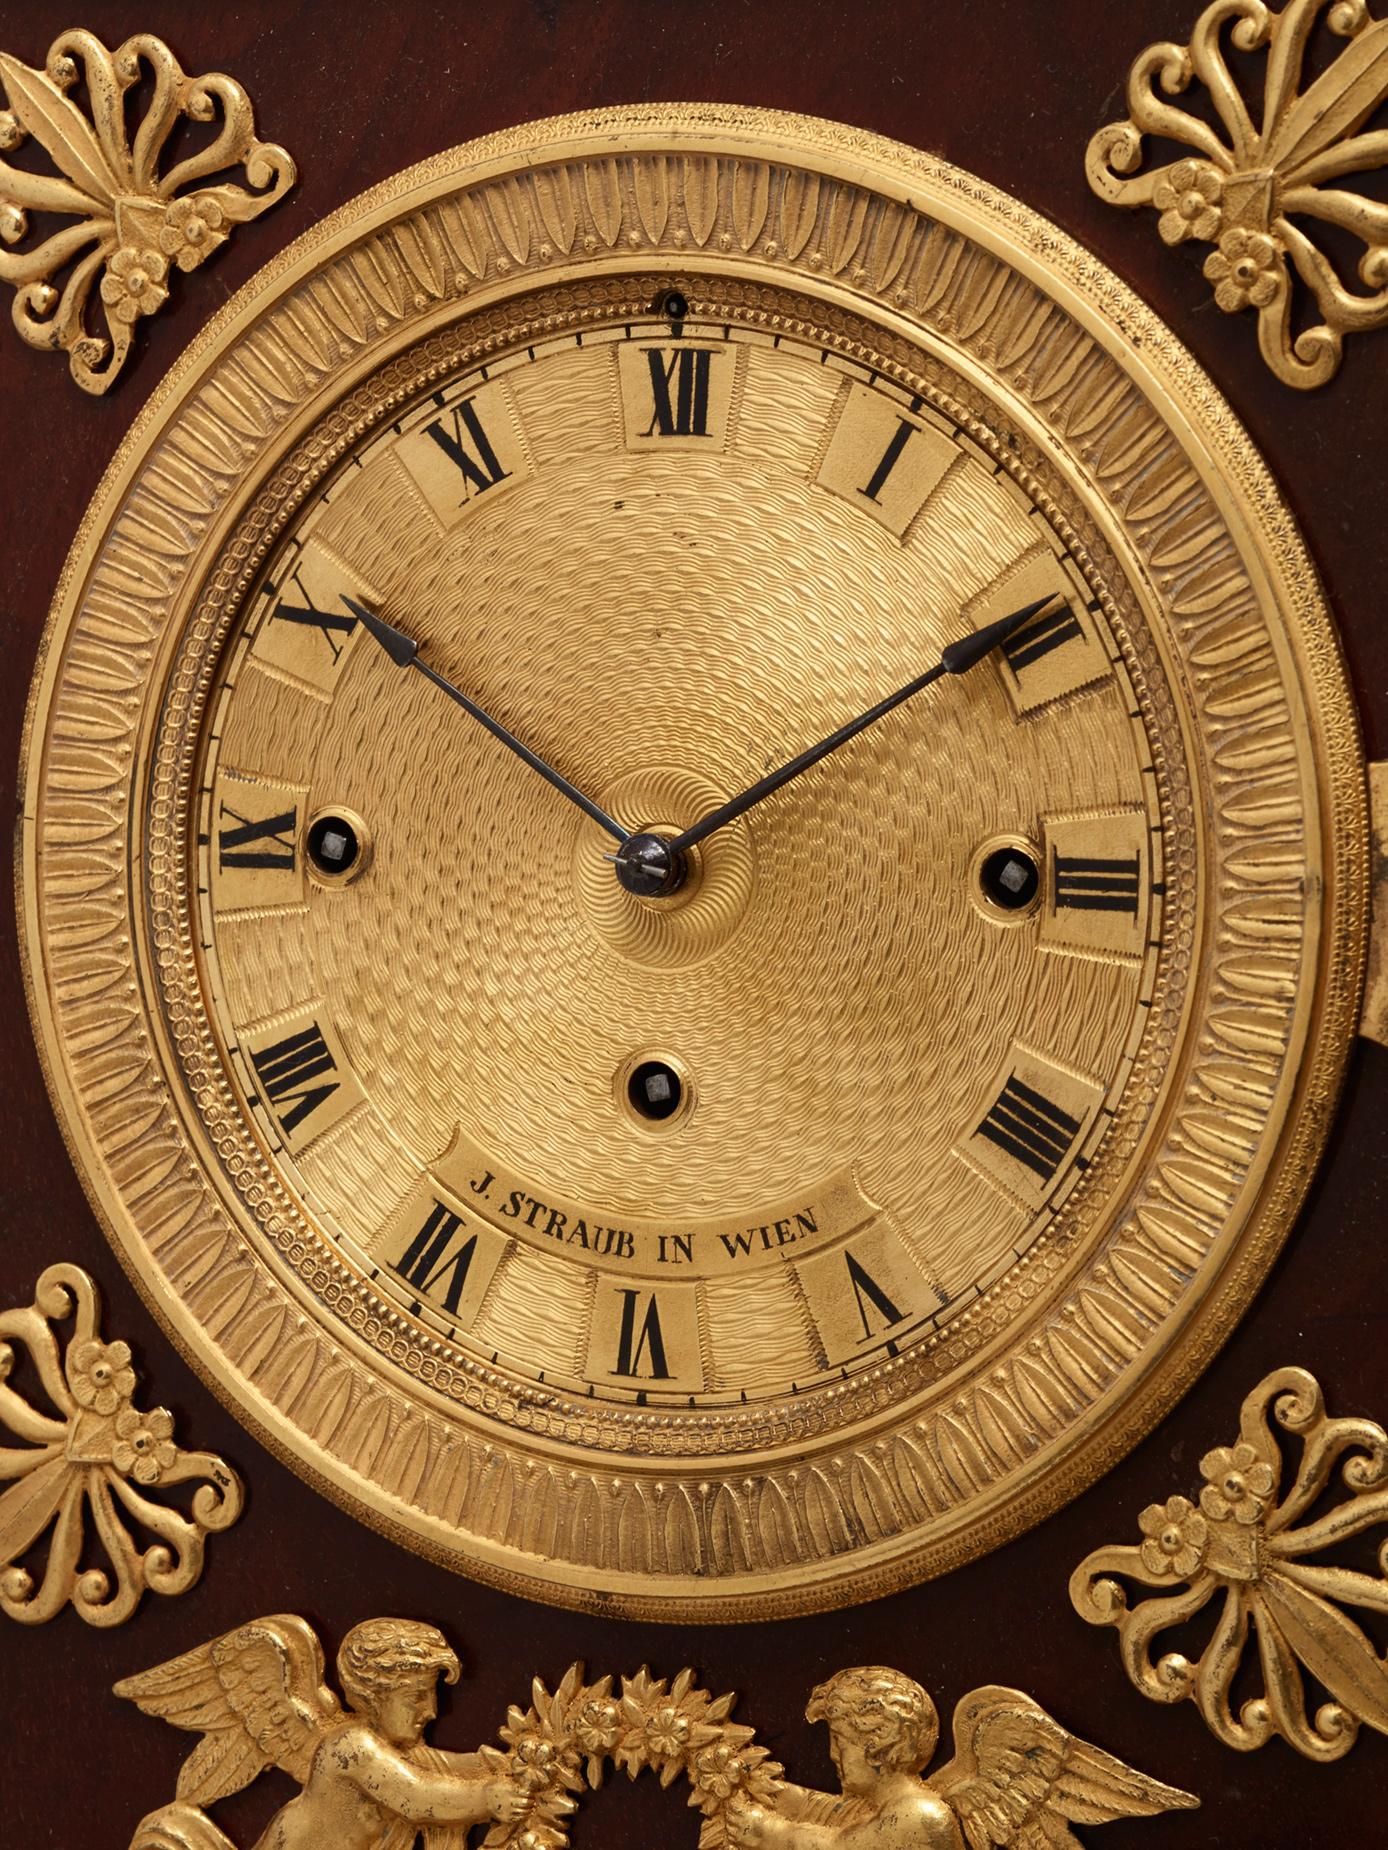 Une très charmante horloge de cheminée viennoise joliment décorée, signée J Straub à Wien.

Les bronzes guildés, ravissants et détaillés, sont d'une très grande qualité. Sous le beau cadran guilloché signé, deux charmants anges portant une couronne.